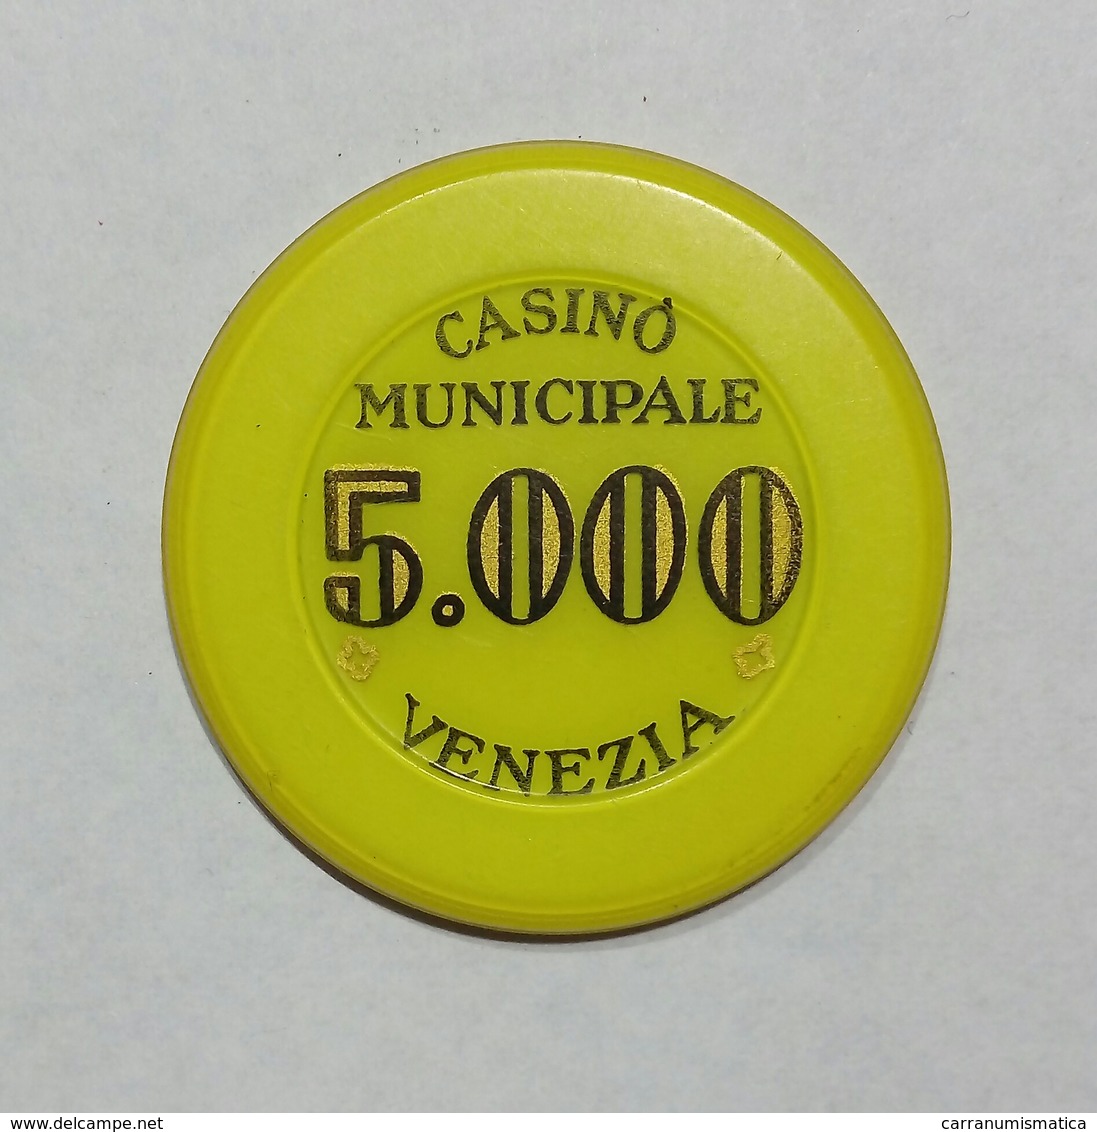 VENEZIA - Casinò MUNICIPALE Di VENEZIA - CHIP / FICHE / TOKEN Da 5000 - Casino